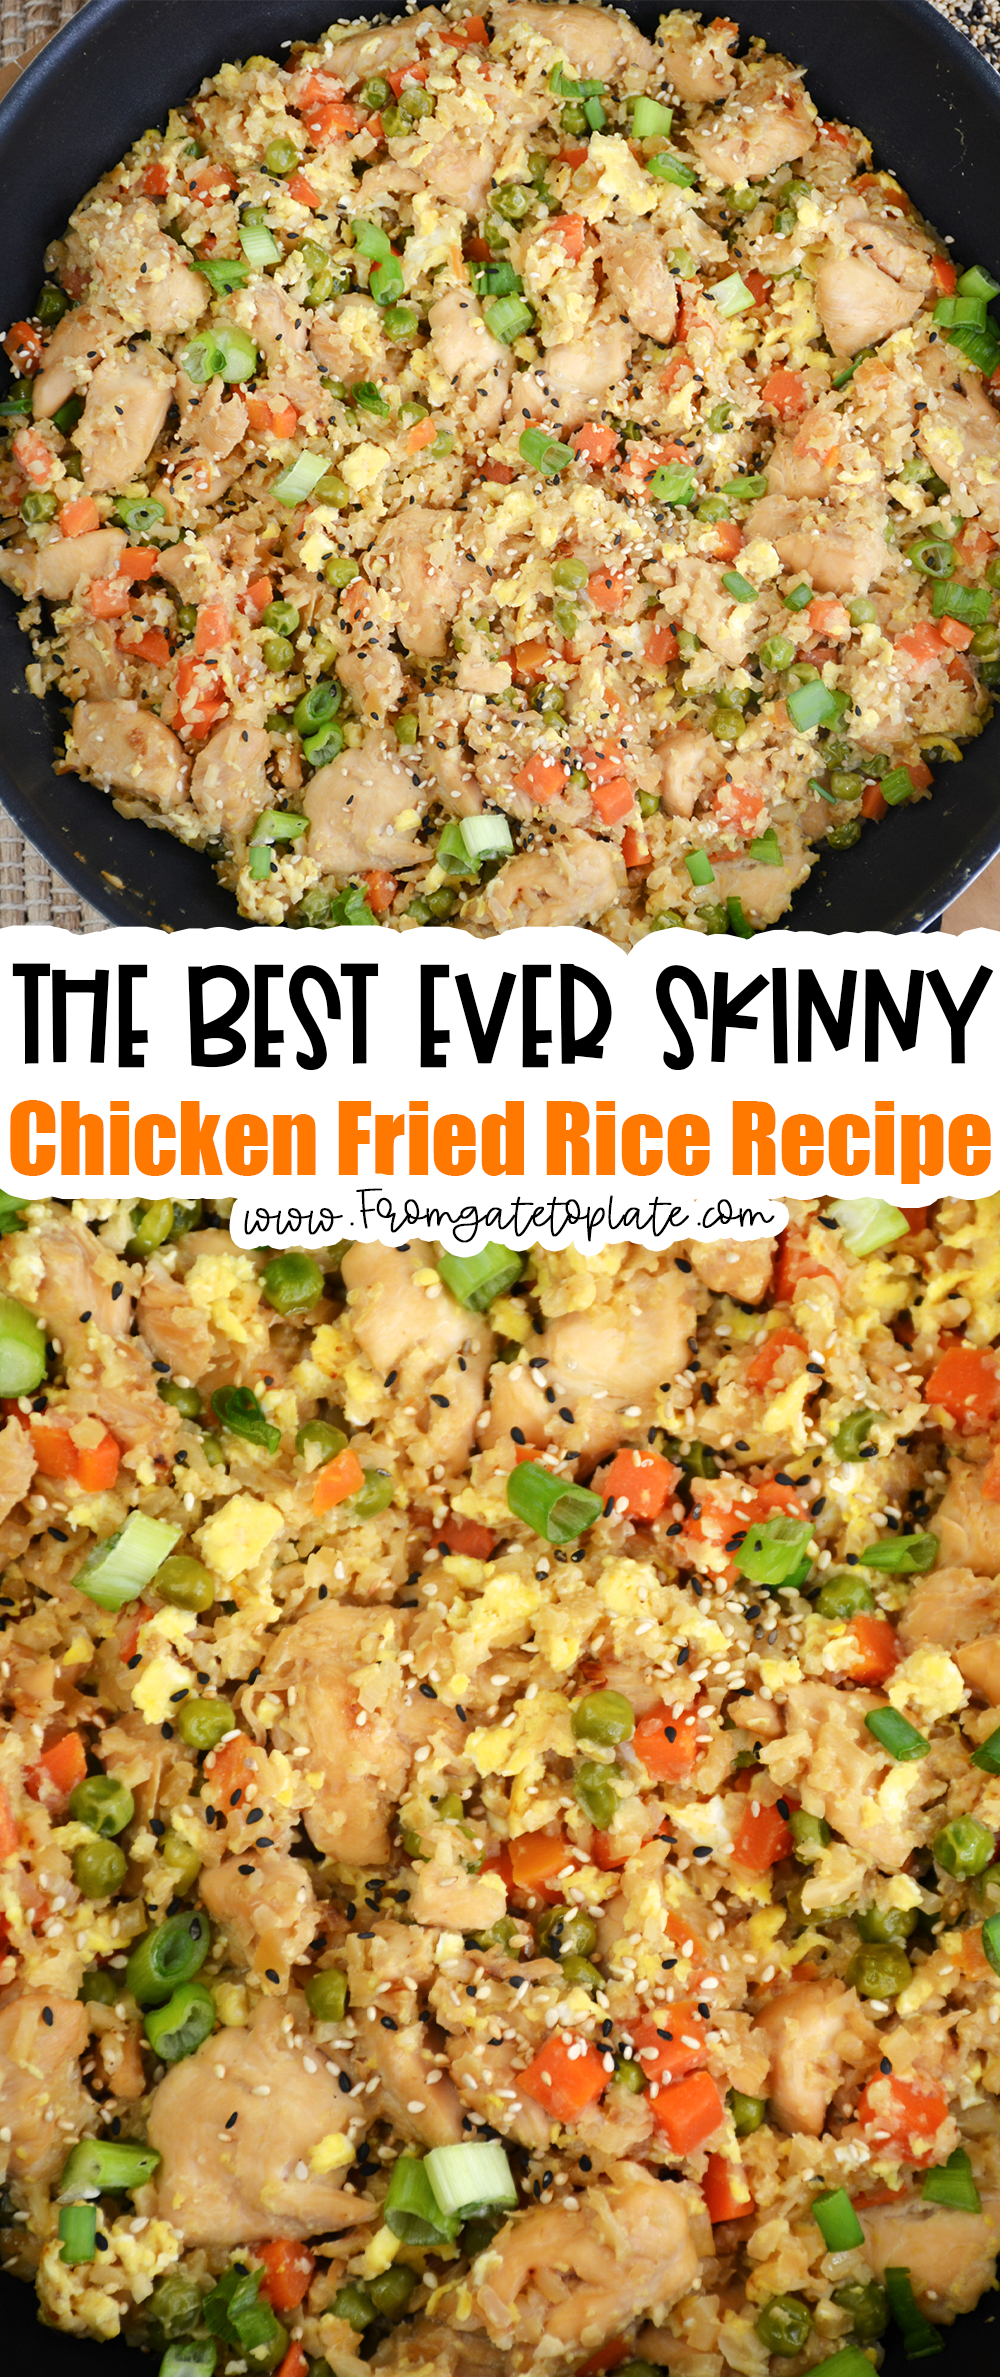 Skinny Chicken Fried Rice